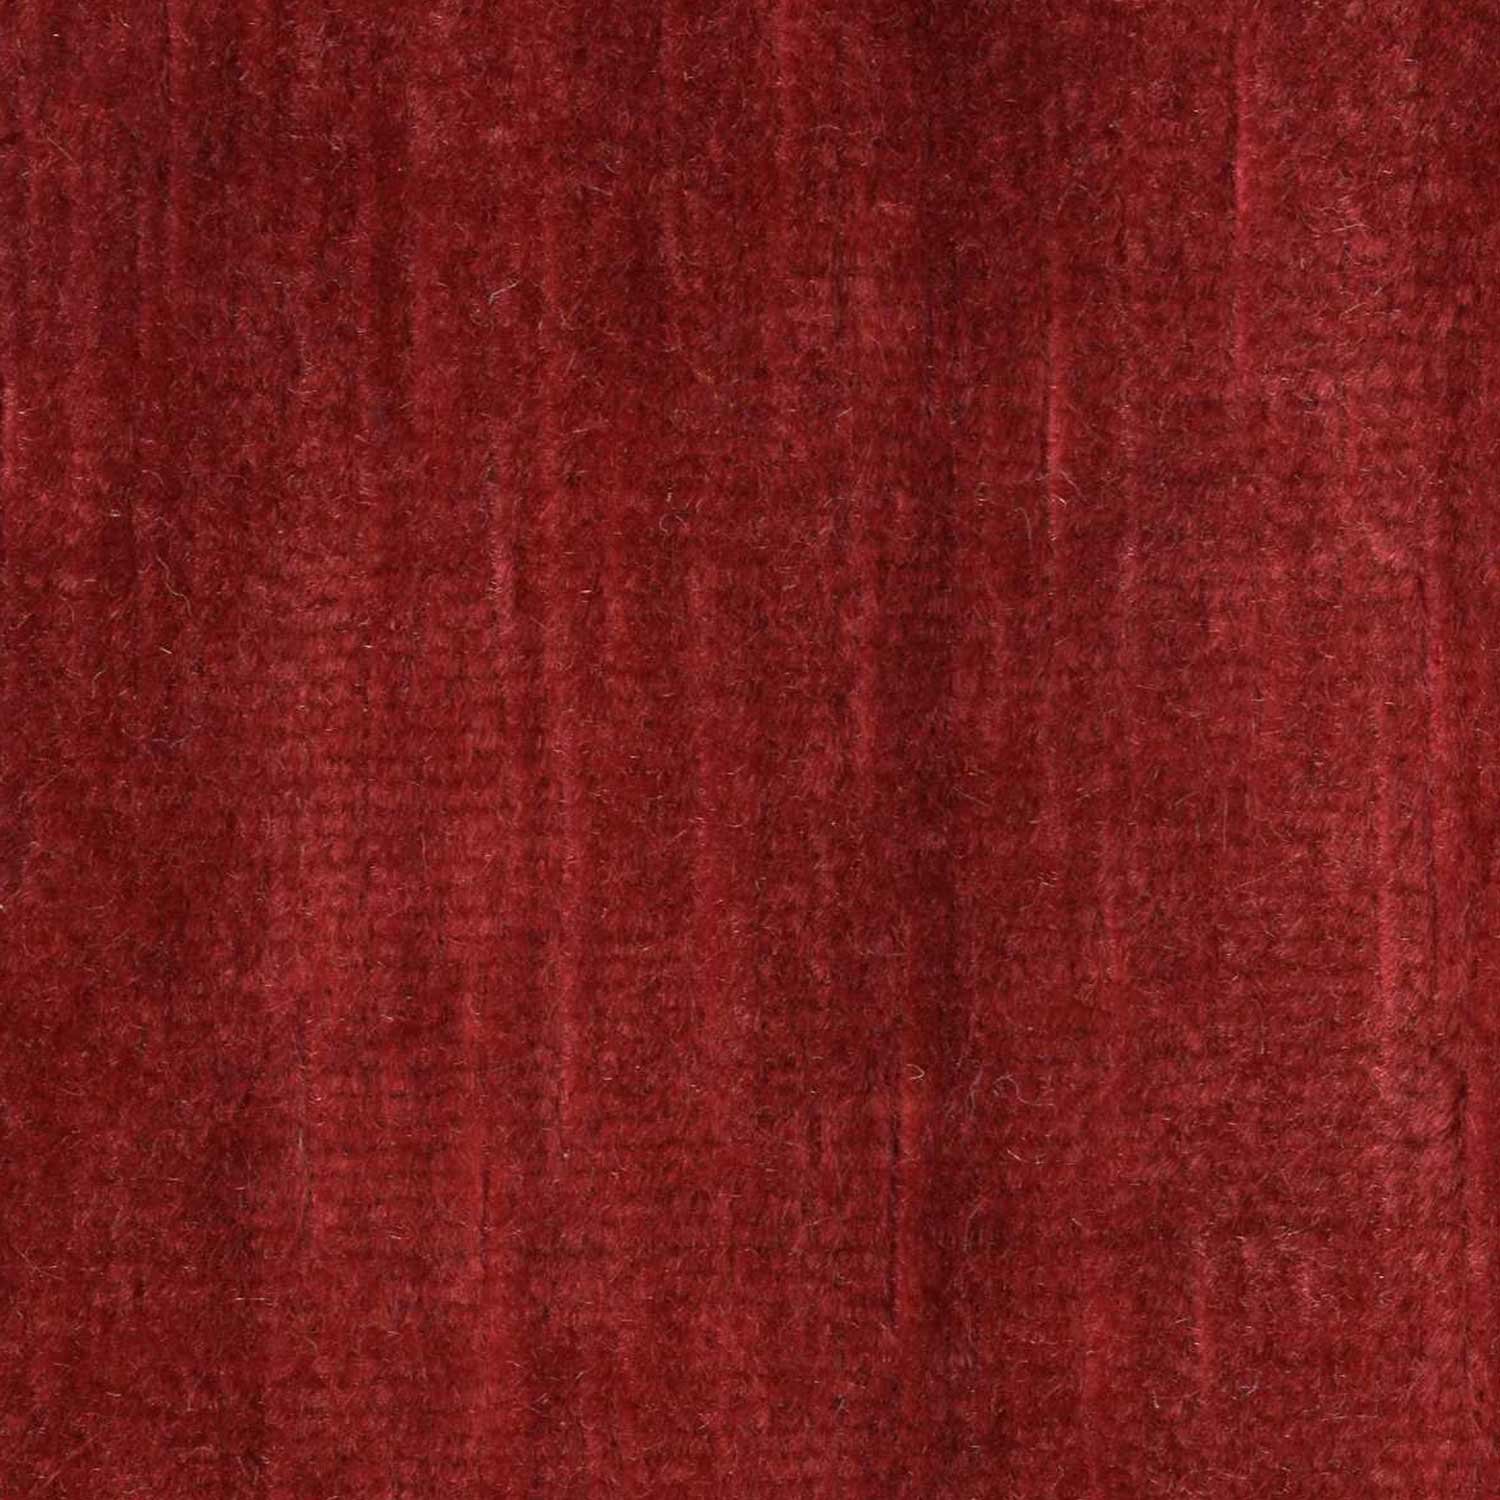 seamless red velvet fabric